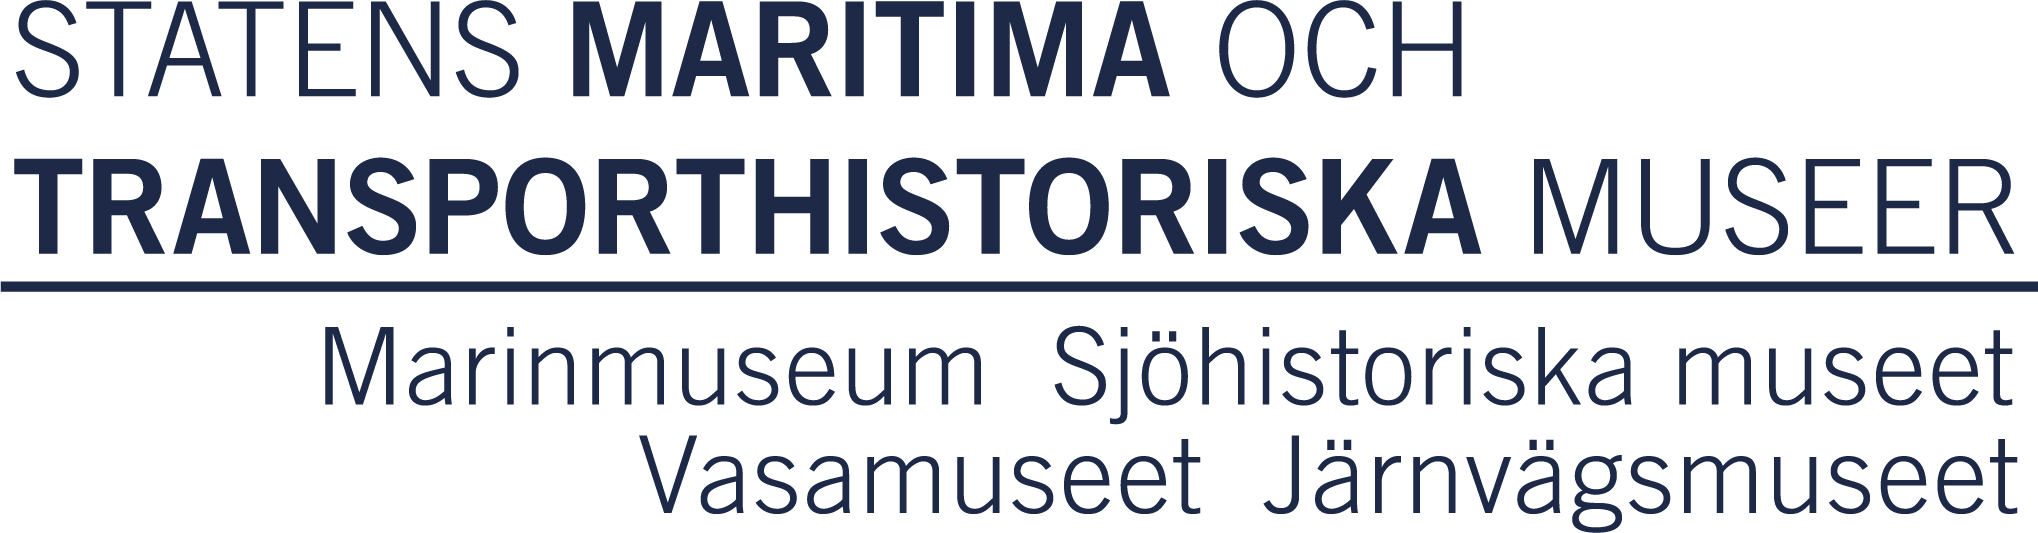 Logotyp för Statens maritima och transporthistoriska museer